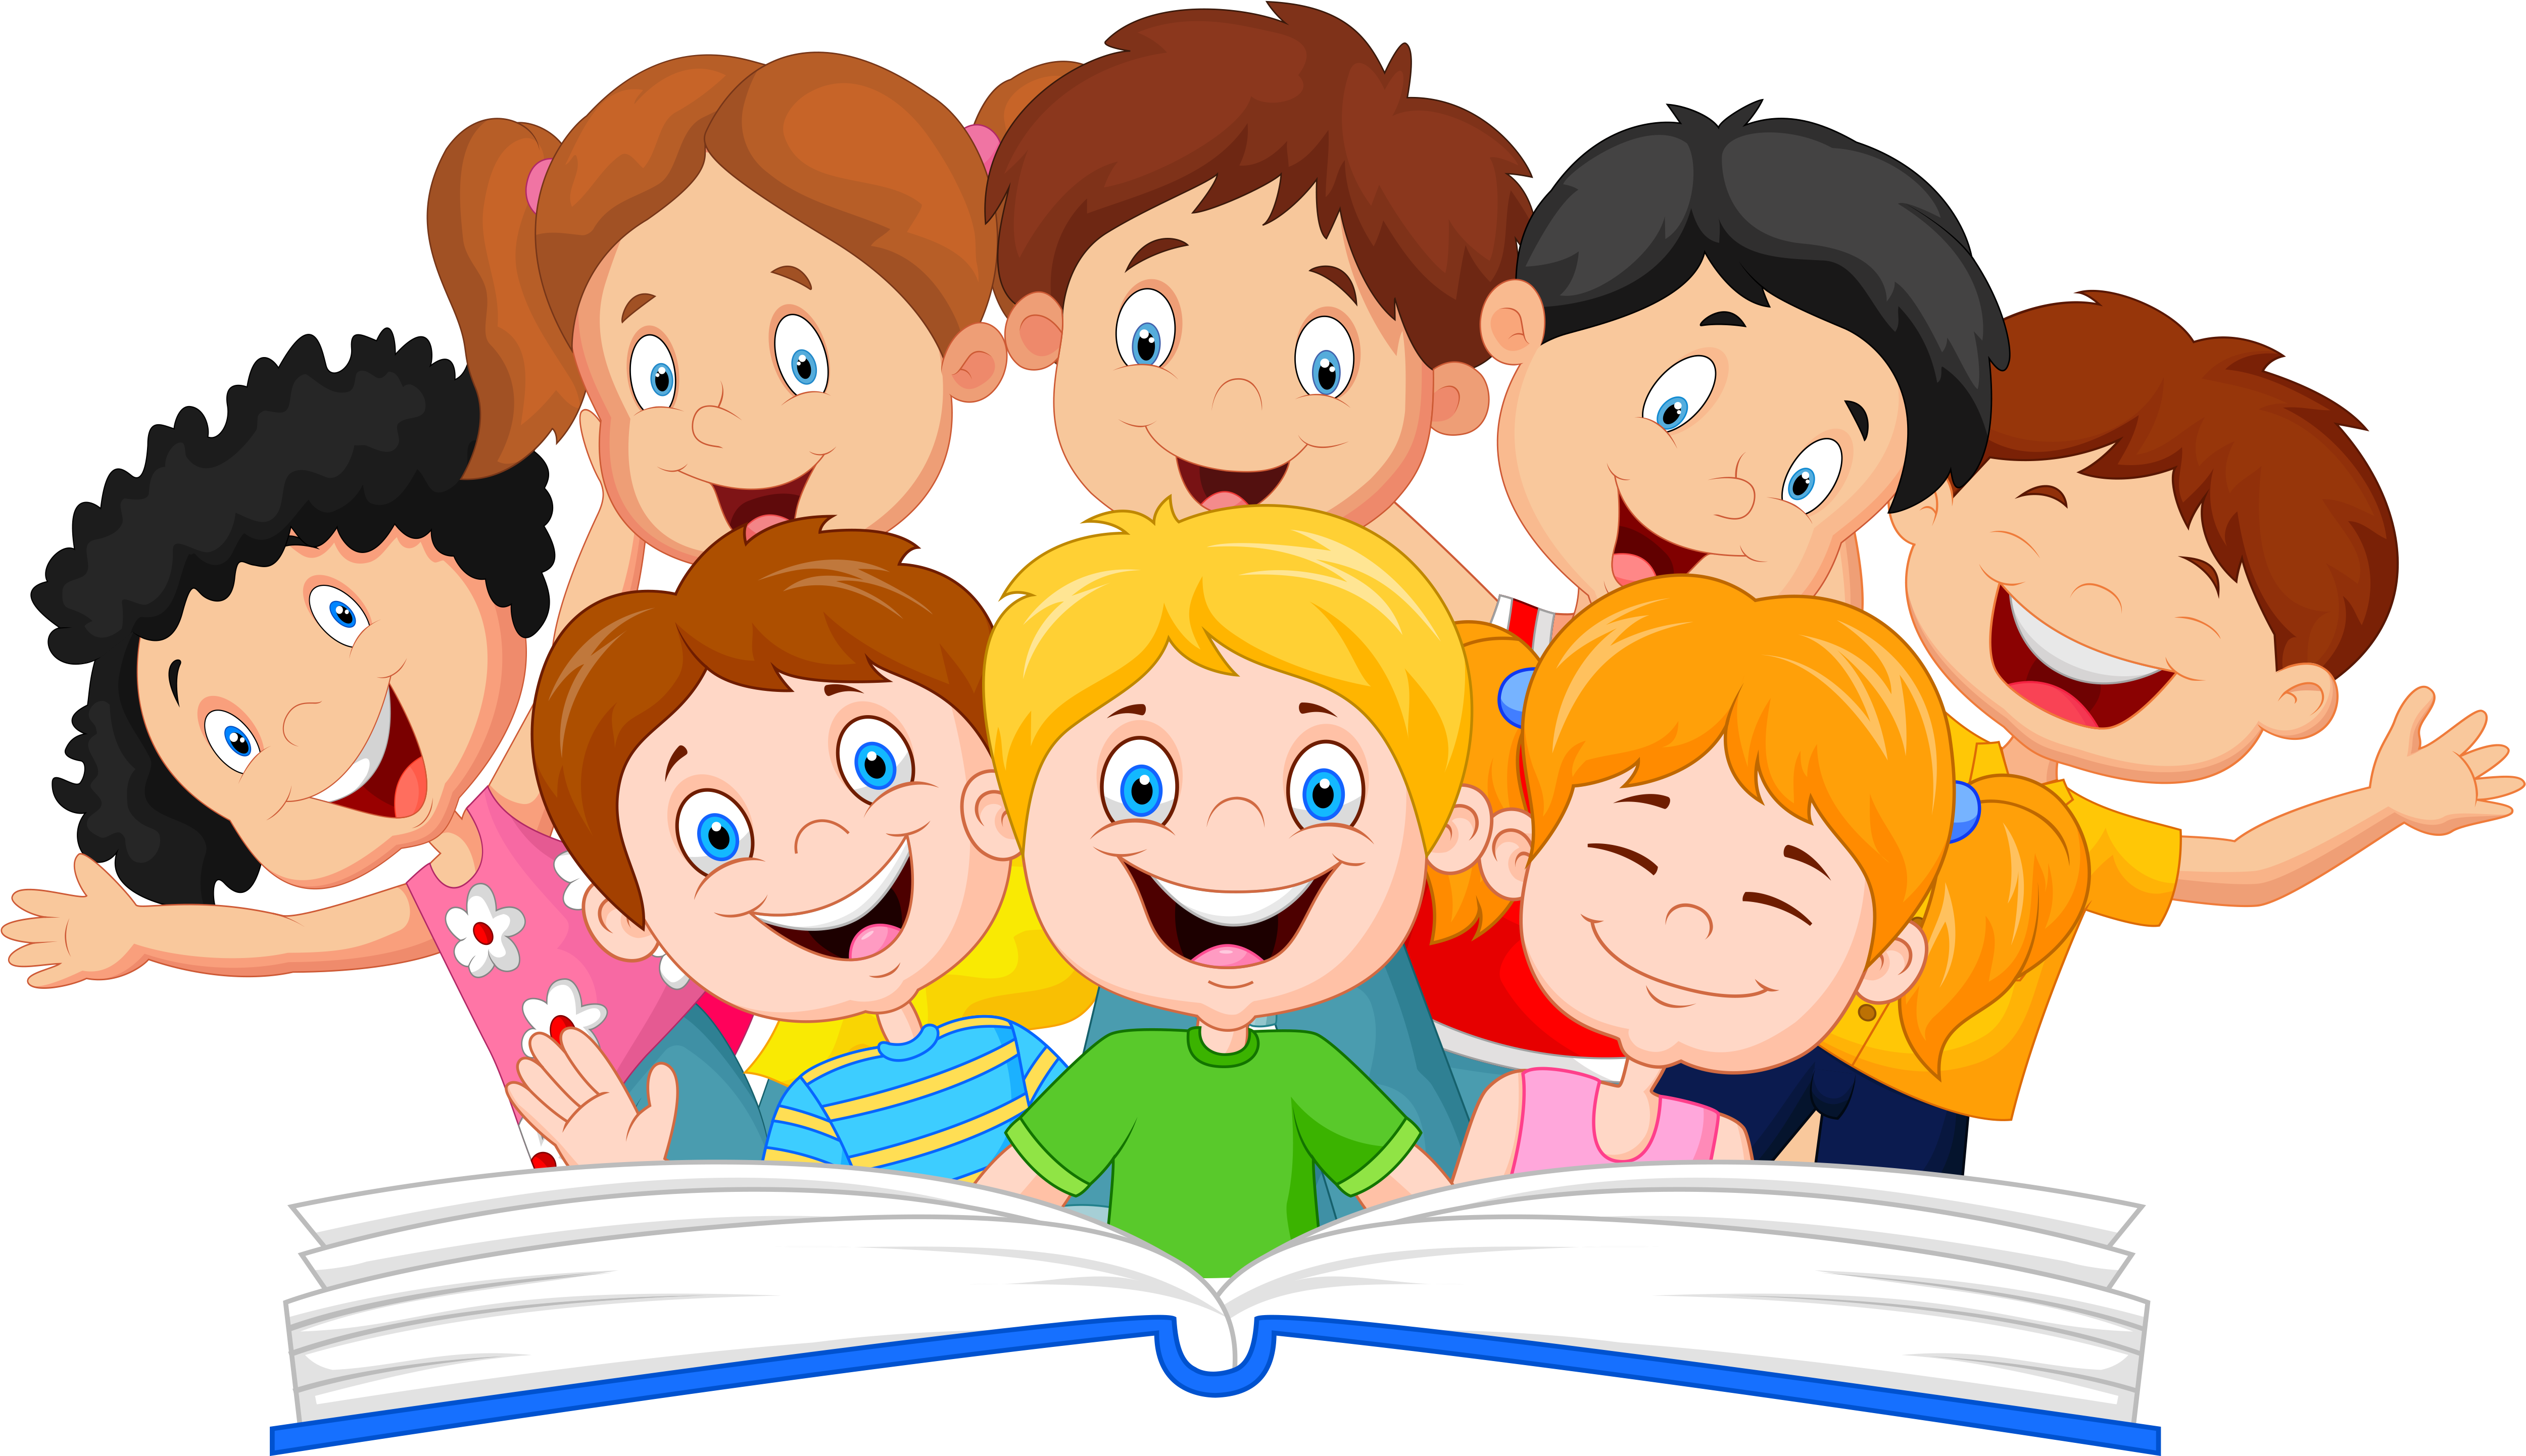 Kids Reading Free Download Image PNG Image